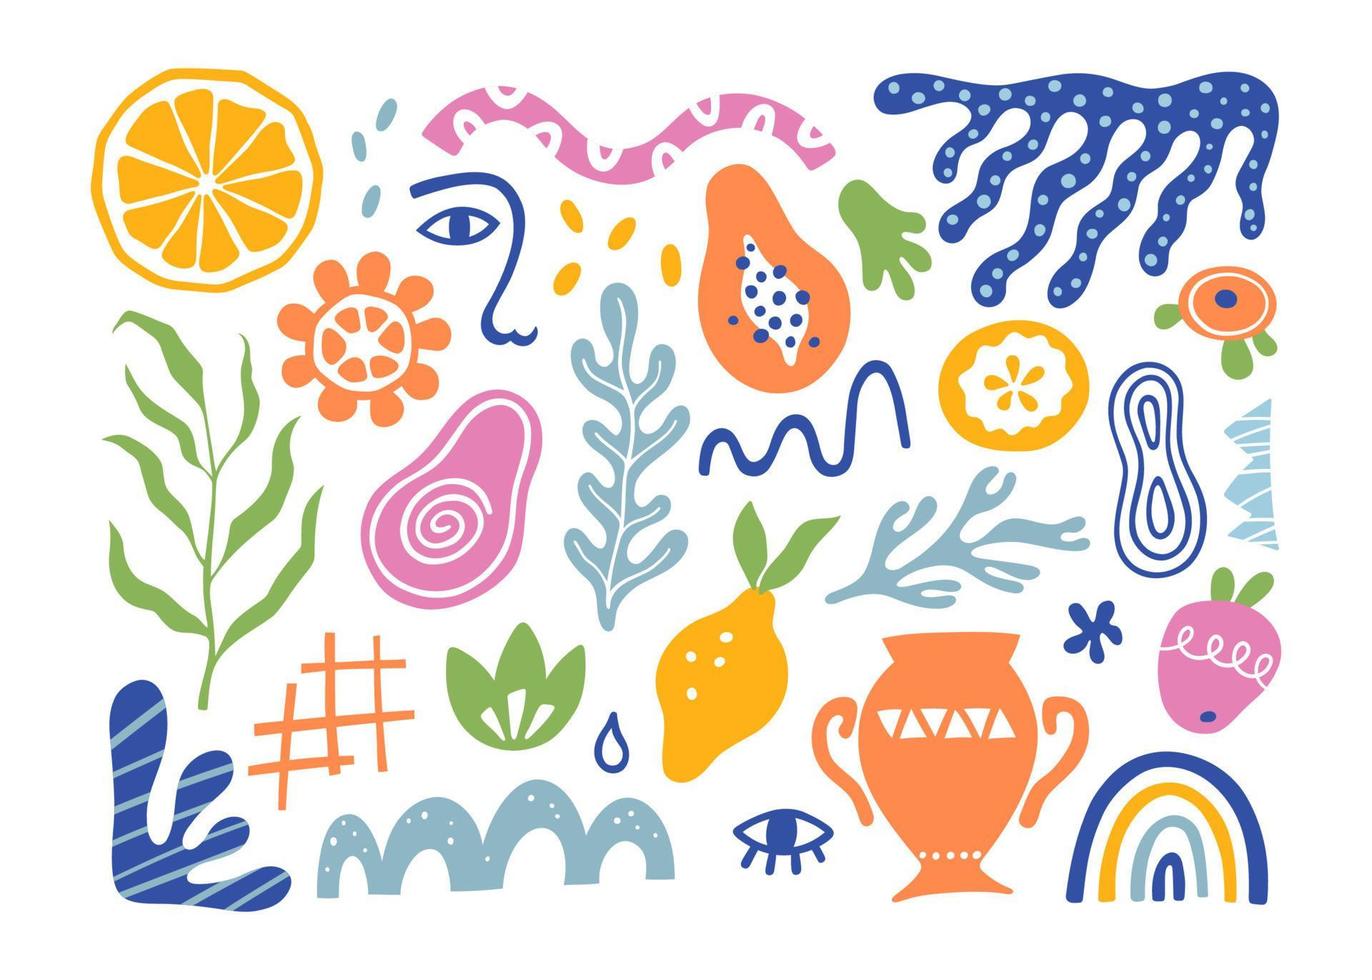 organiska blobbar, tropiska frukter, löv, mänskligt ansikte och koraller i matissestil. uppsättning trendiga doodle abstrakta element. bunt med naturliga former, slumpmässig matissesamling. vektor illustration